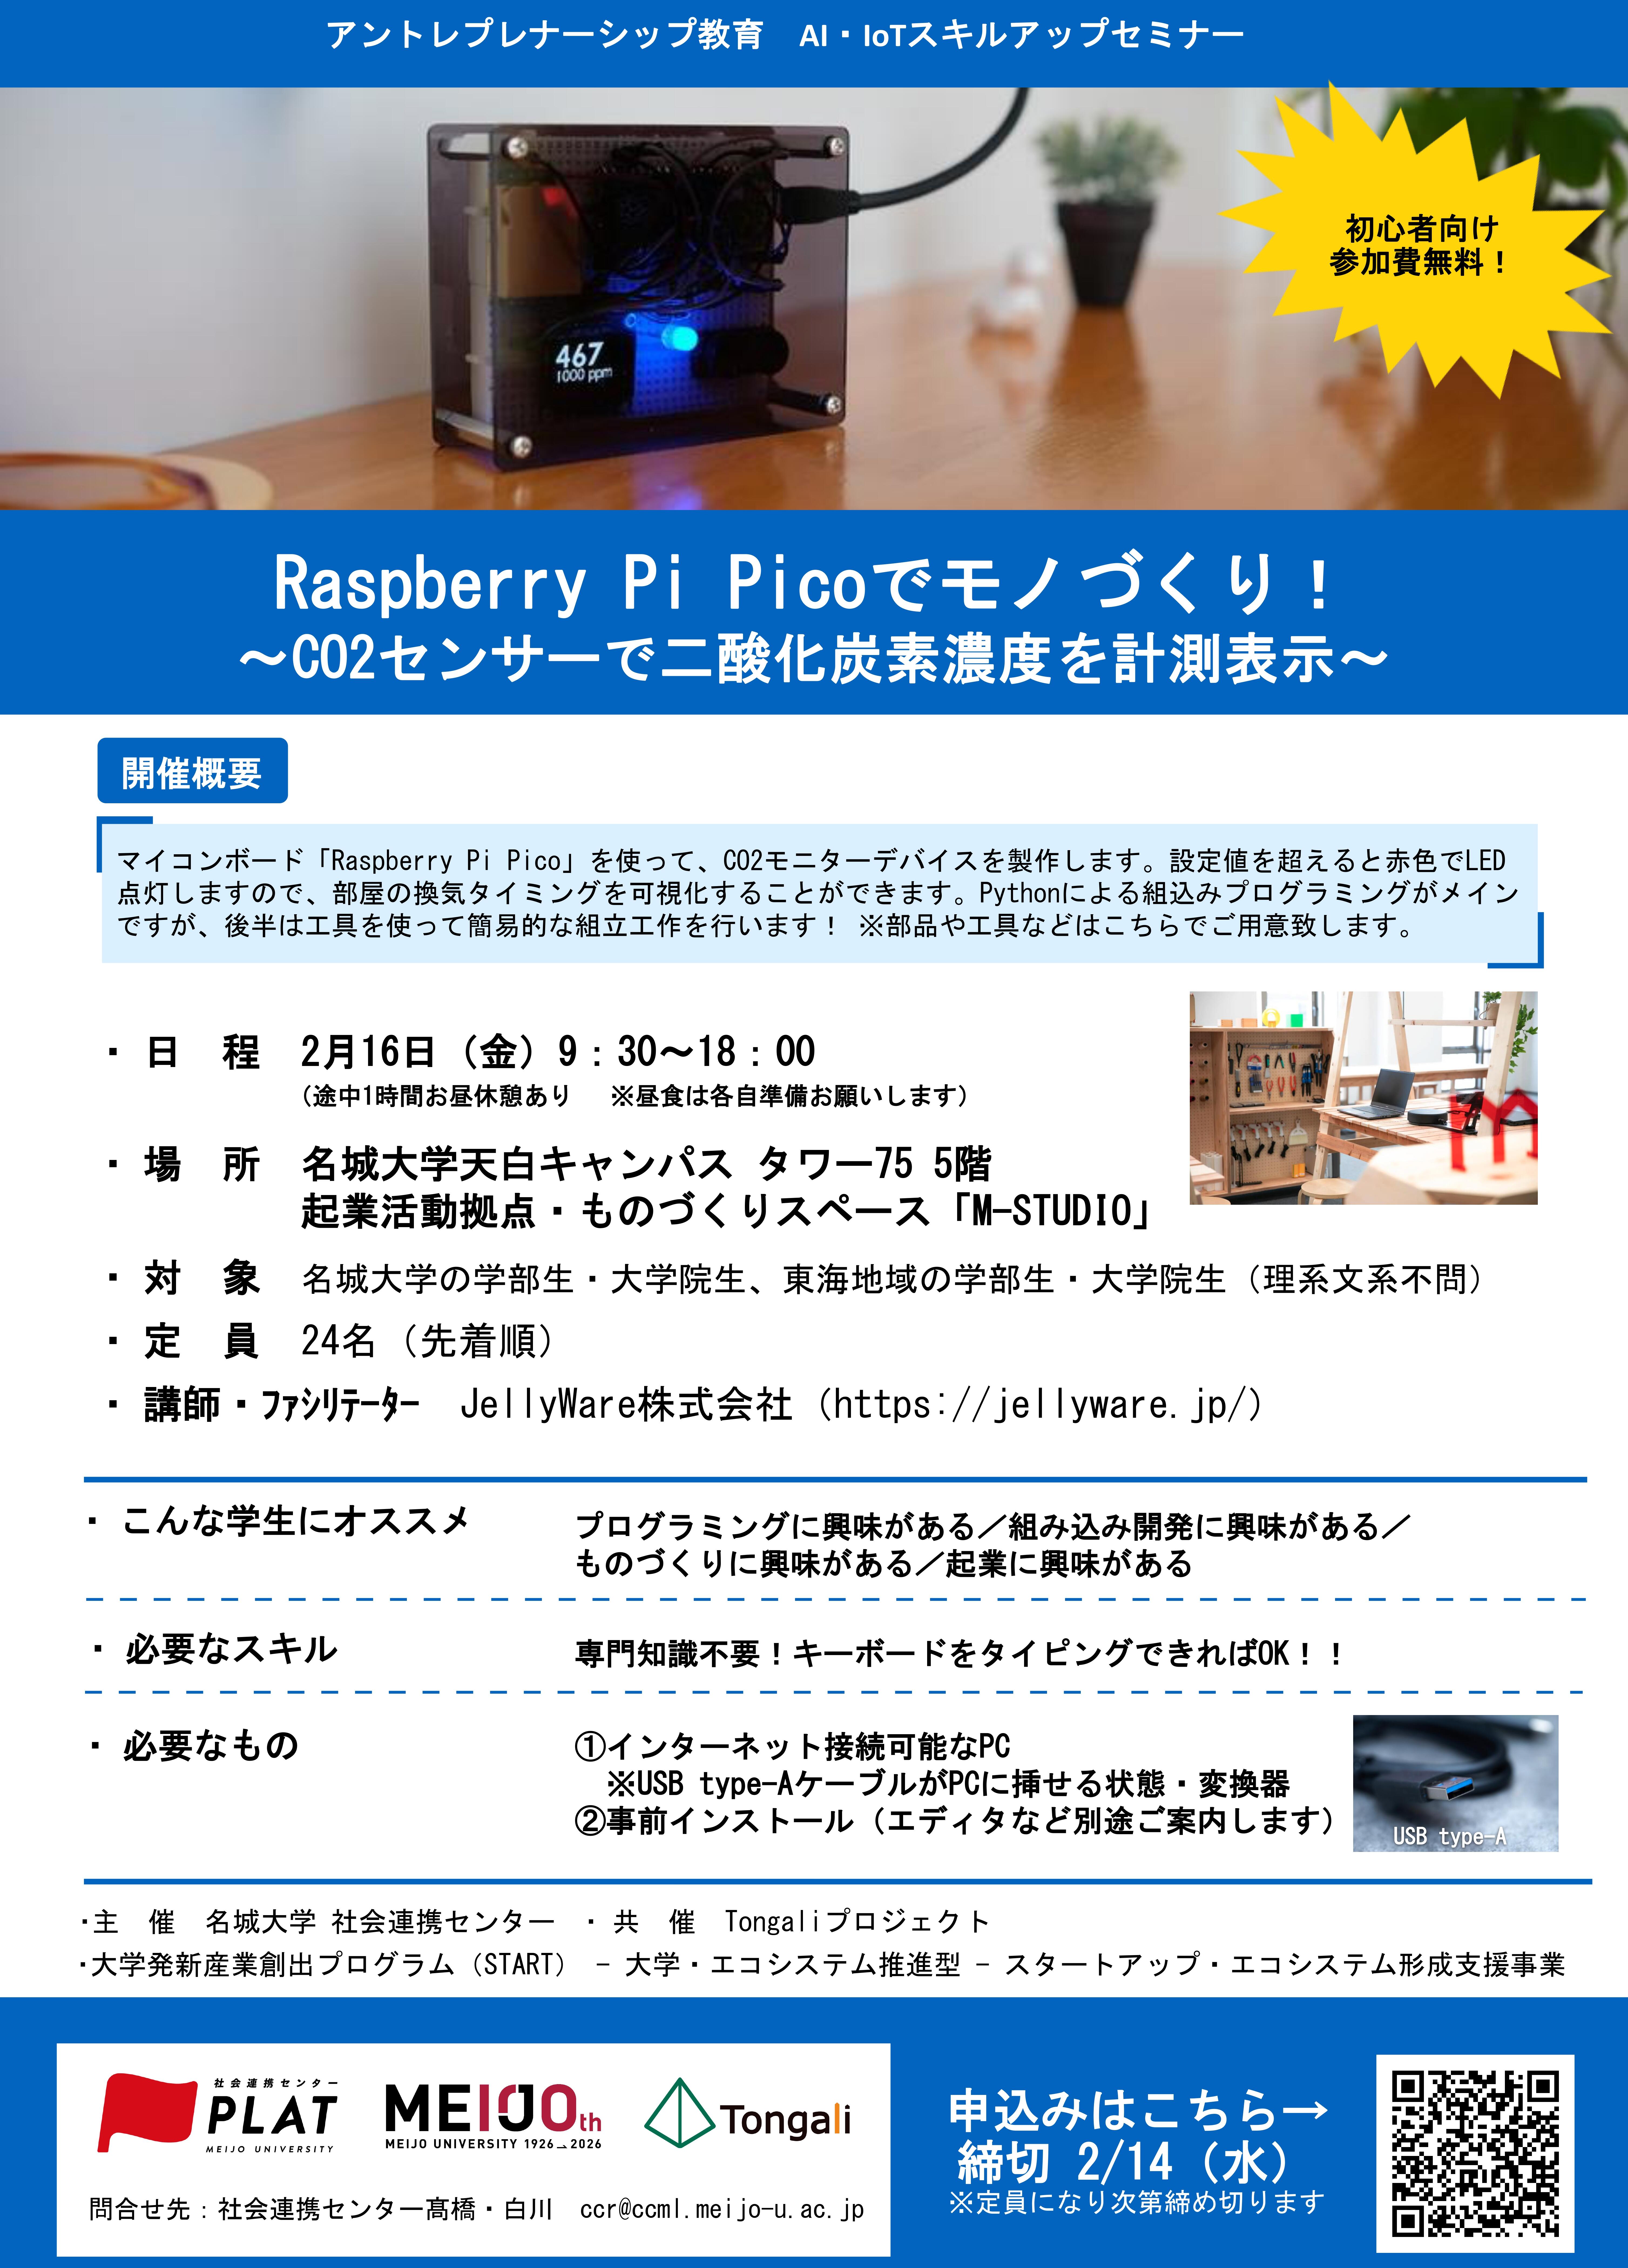 【参加者募集】AI・IoT人材育成プログラム(3)『Raspberry Pi Picoでモノづくり！～CO2センサーで二酸化炭素濃度を計測表示～』